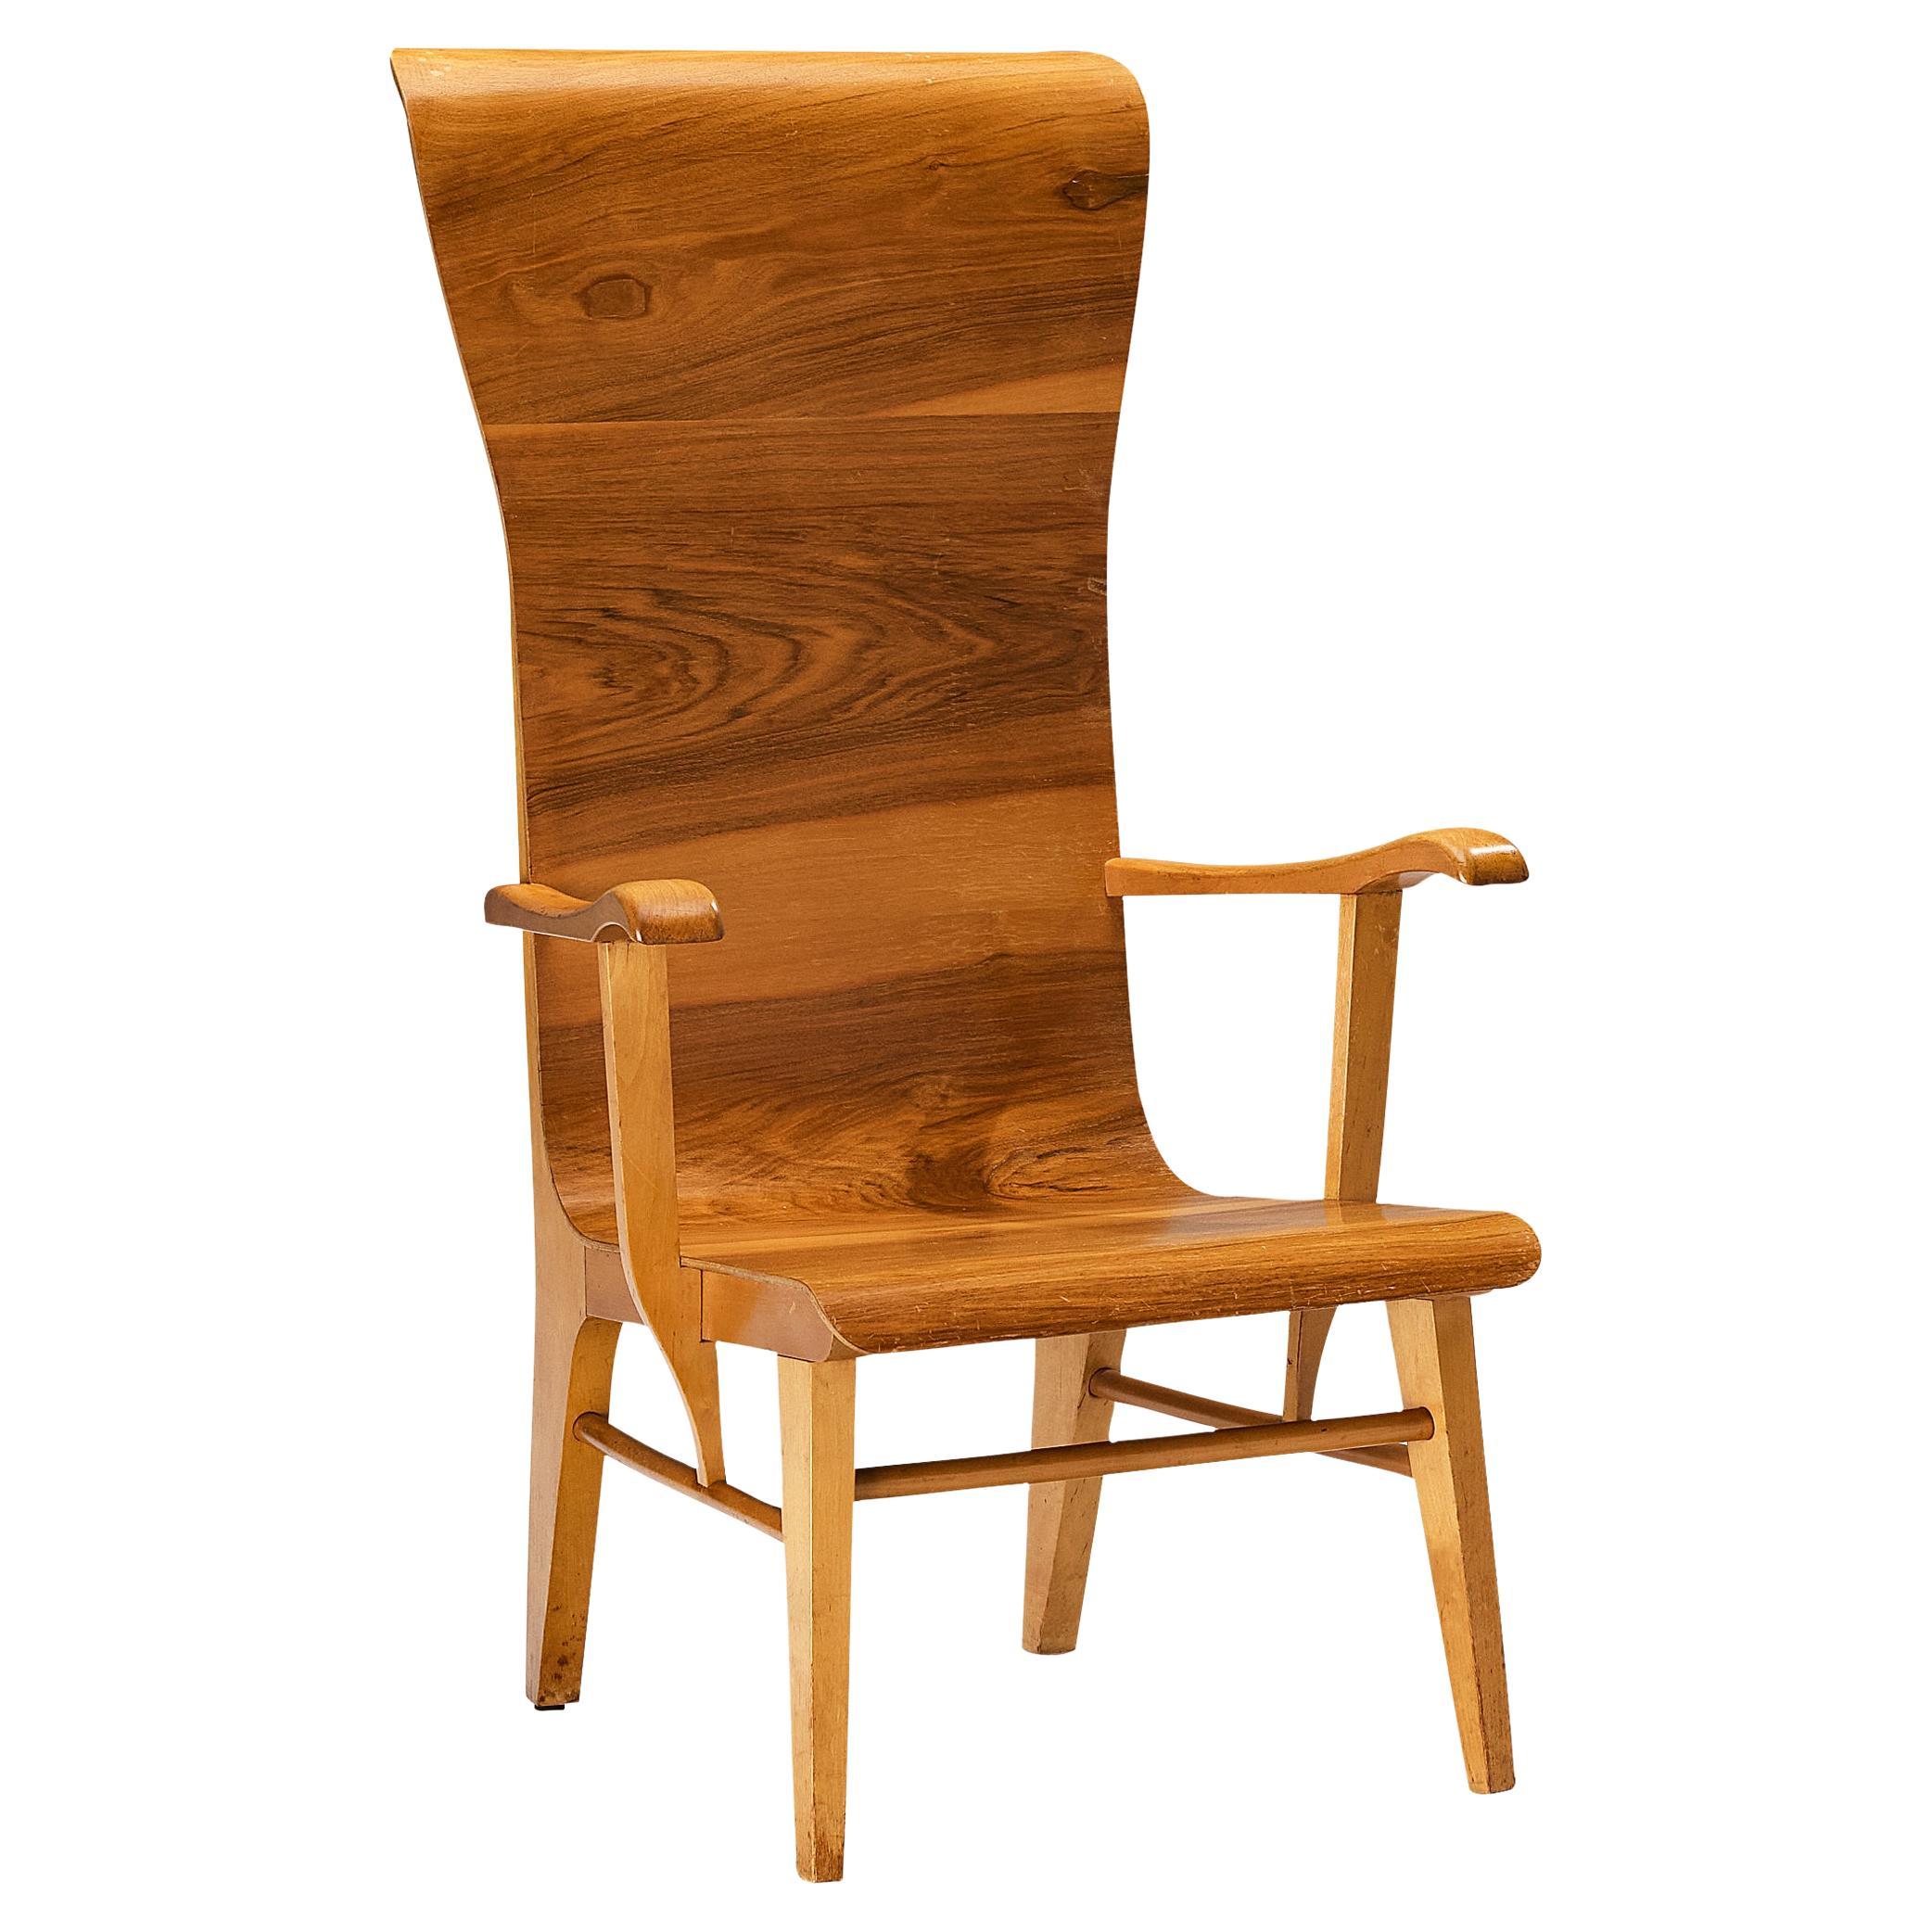 Auke Komter for Metz & Co Rare Armchair in Walnut Plywood (Fauteuil en contreplaqué de noyer)